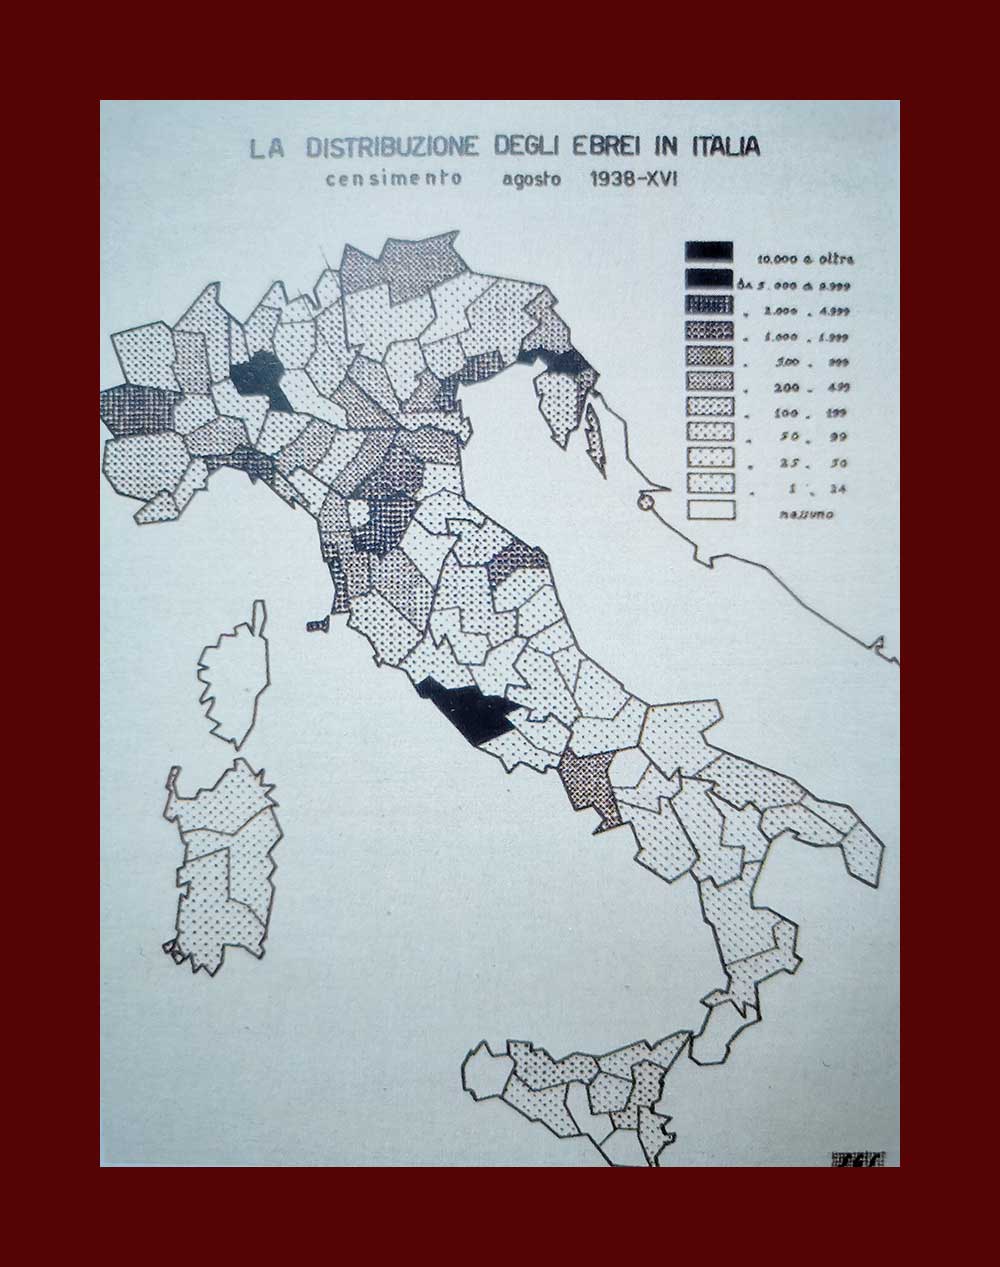 Mappa relativa alla distribuzione degli ebrei dopo il censimento dell’agosto 1938